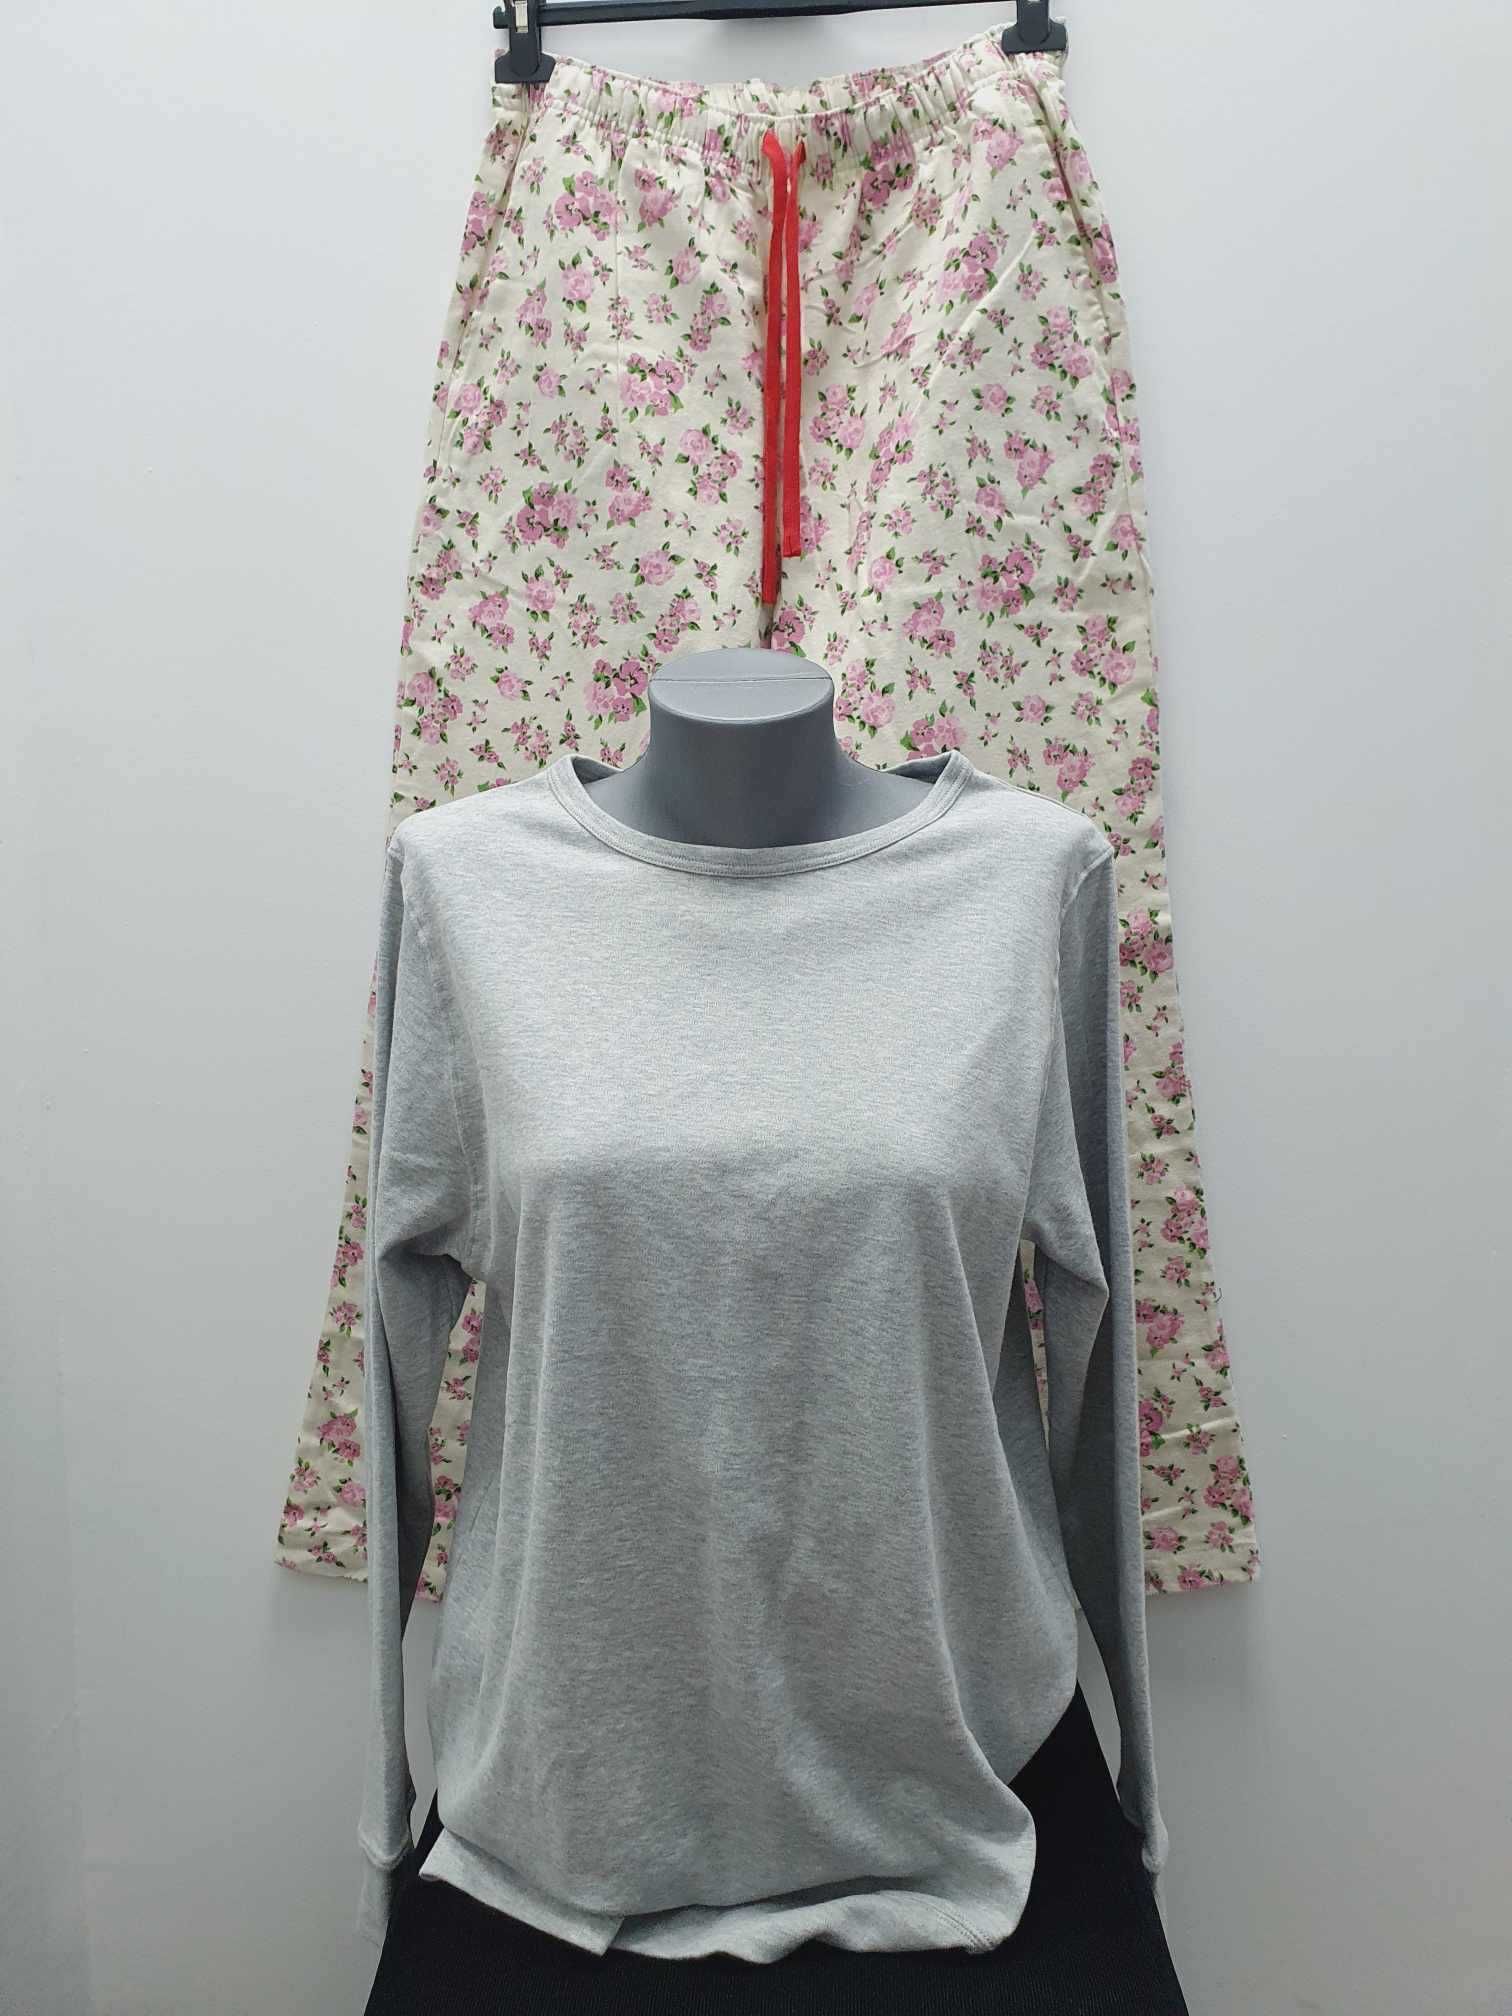 Damska piżama komplet na długo szara w kwiaty roz. M